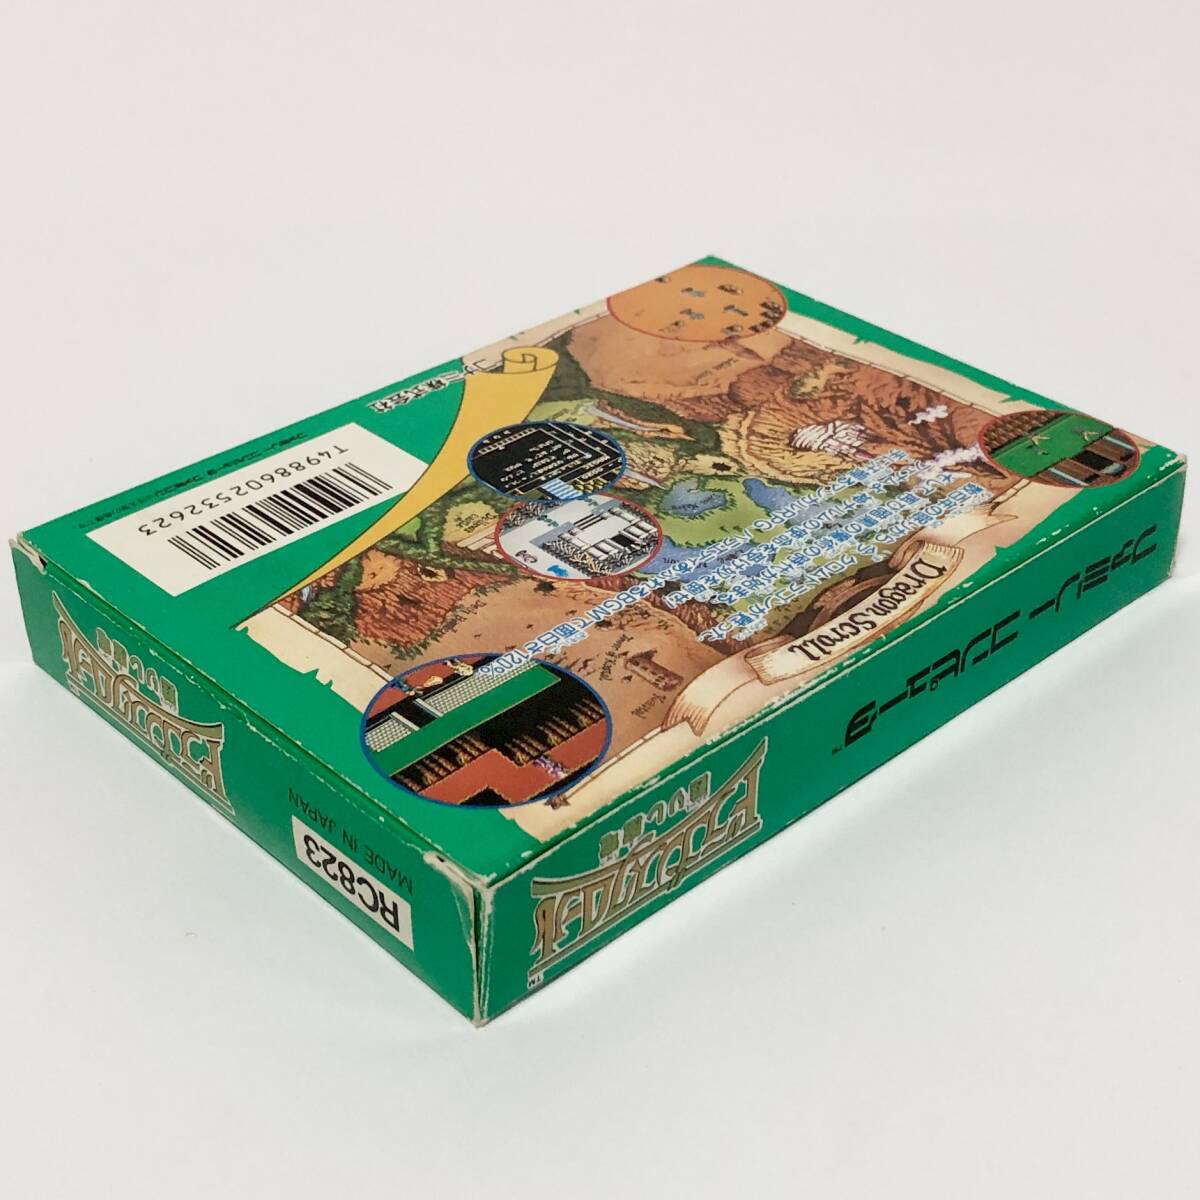 ファミコン ドラゴンスクロール 甦りし魔竜 箱説付き カード付き 痛みあり コナミ Nintendo Famicom Dragon Scroll CIB Tested Konami_画像5